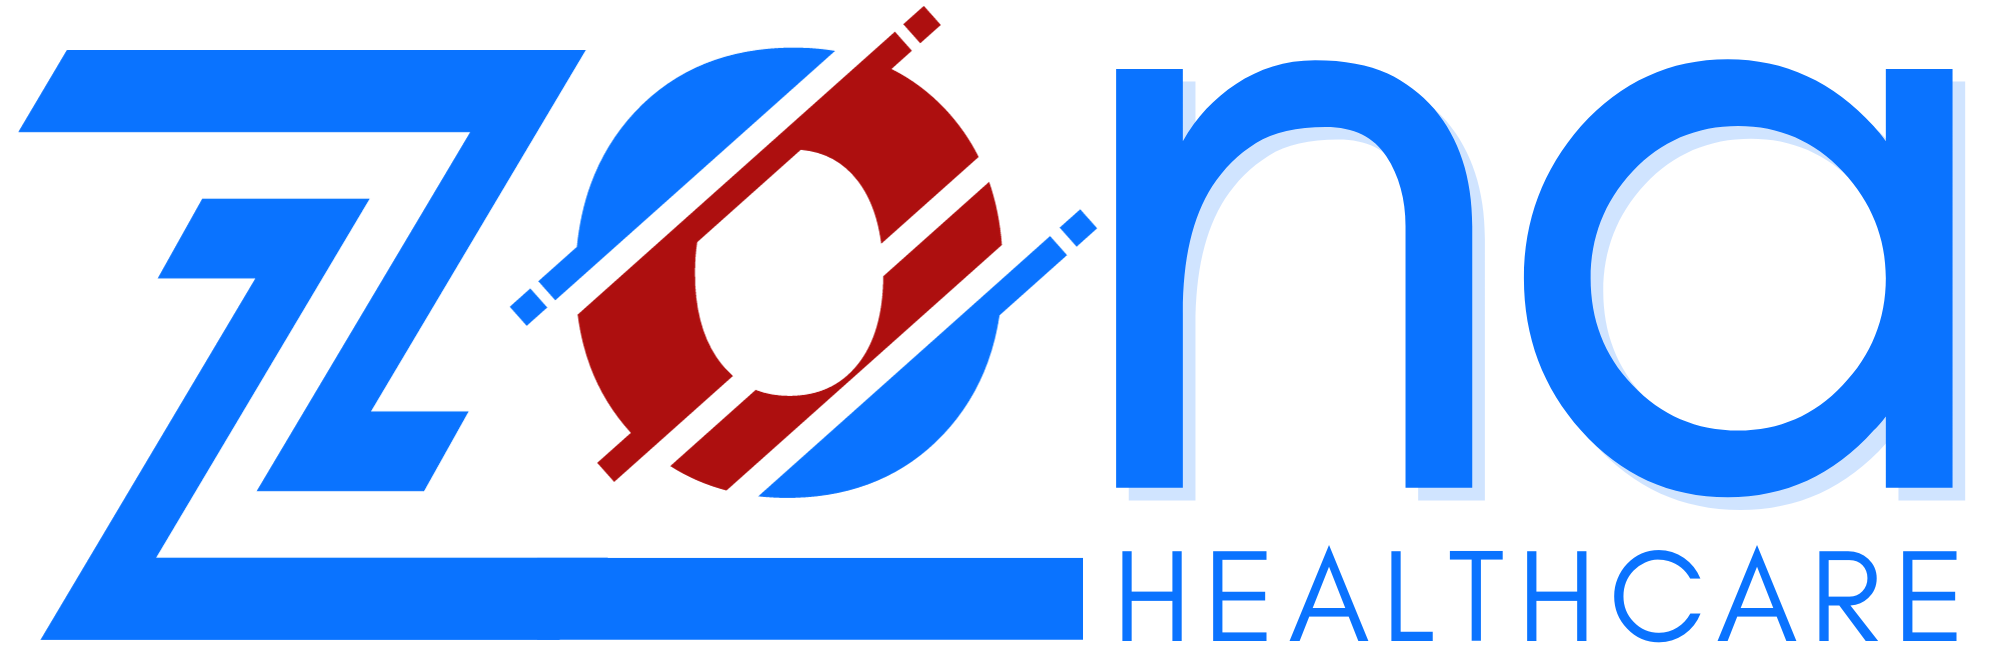 Zona Healthcare - Final Logo